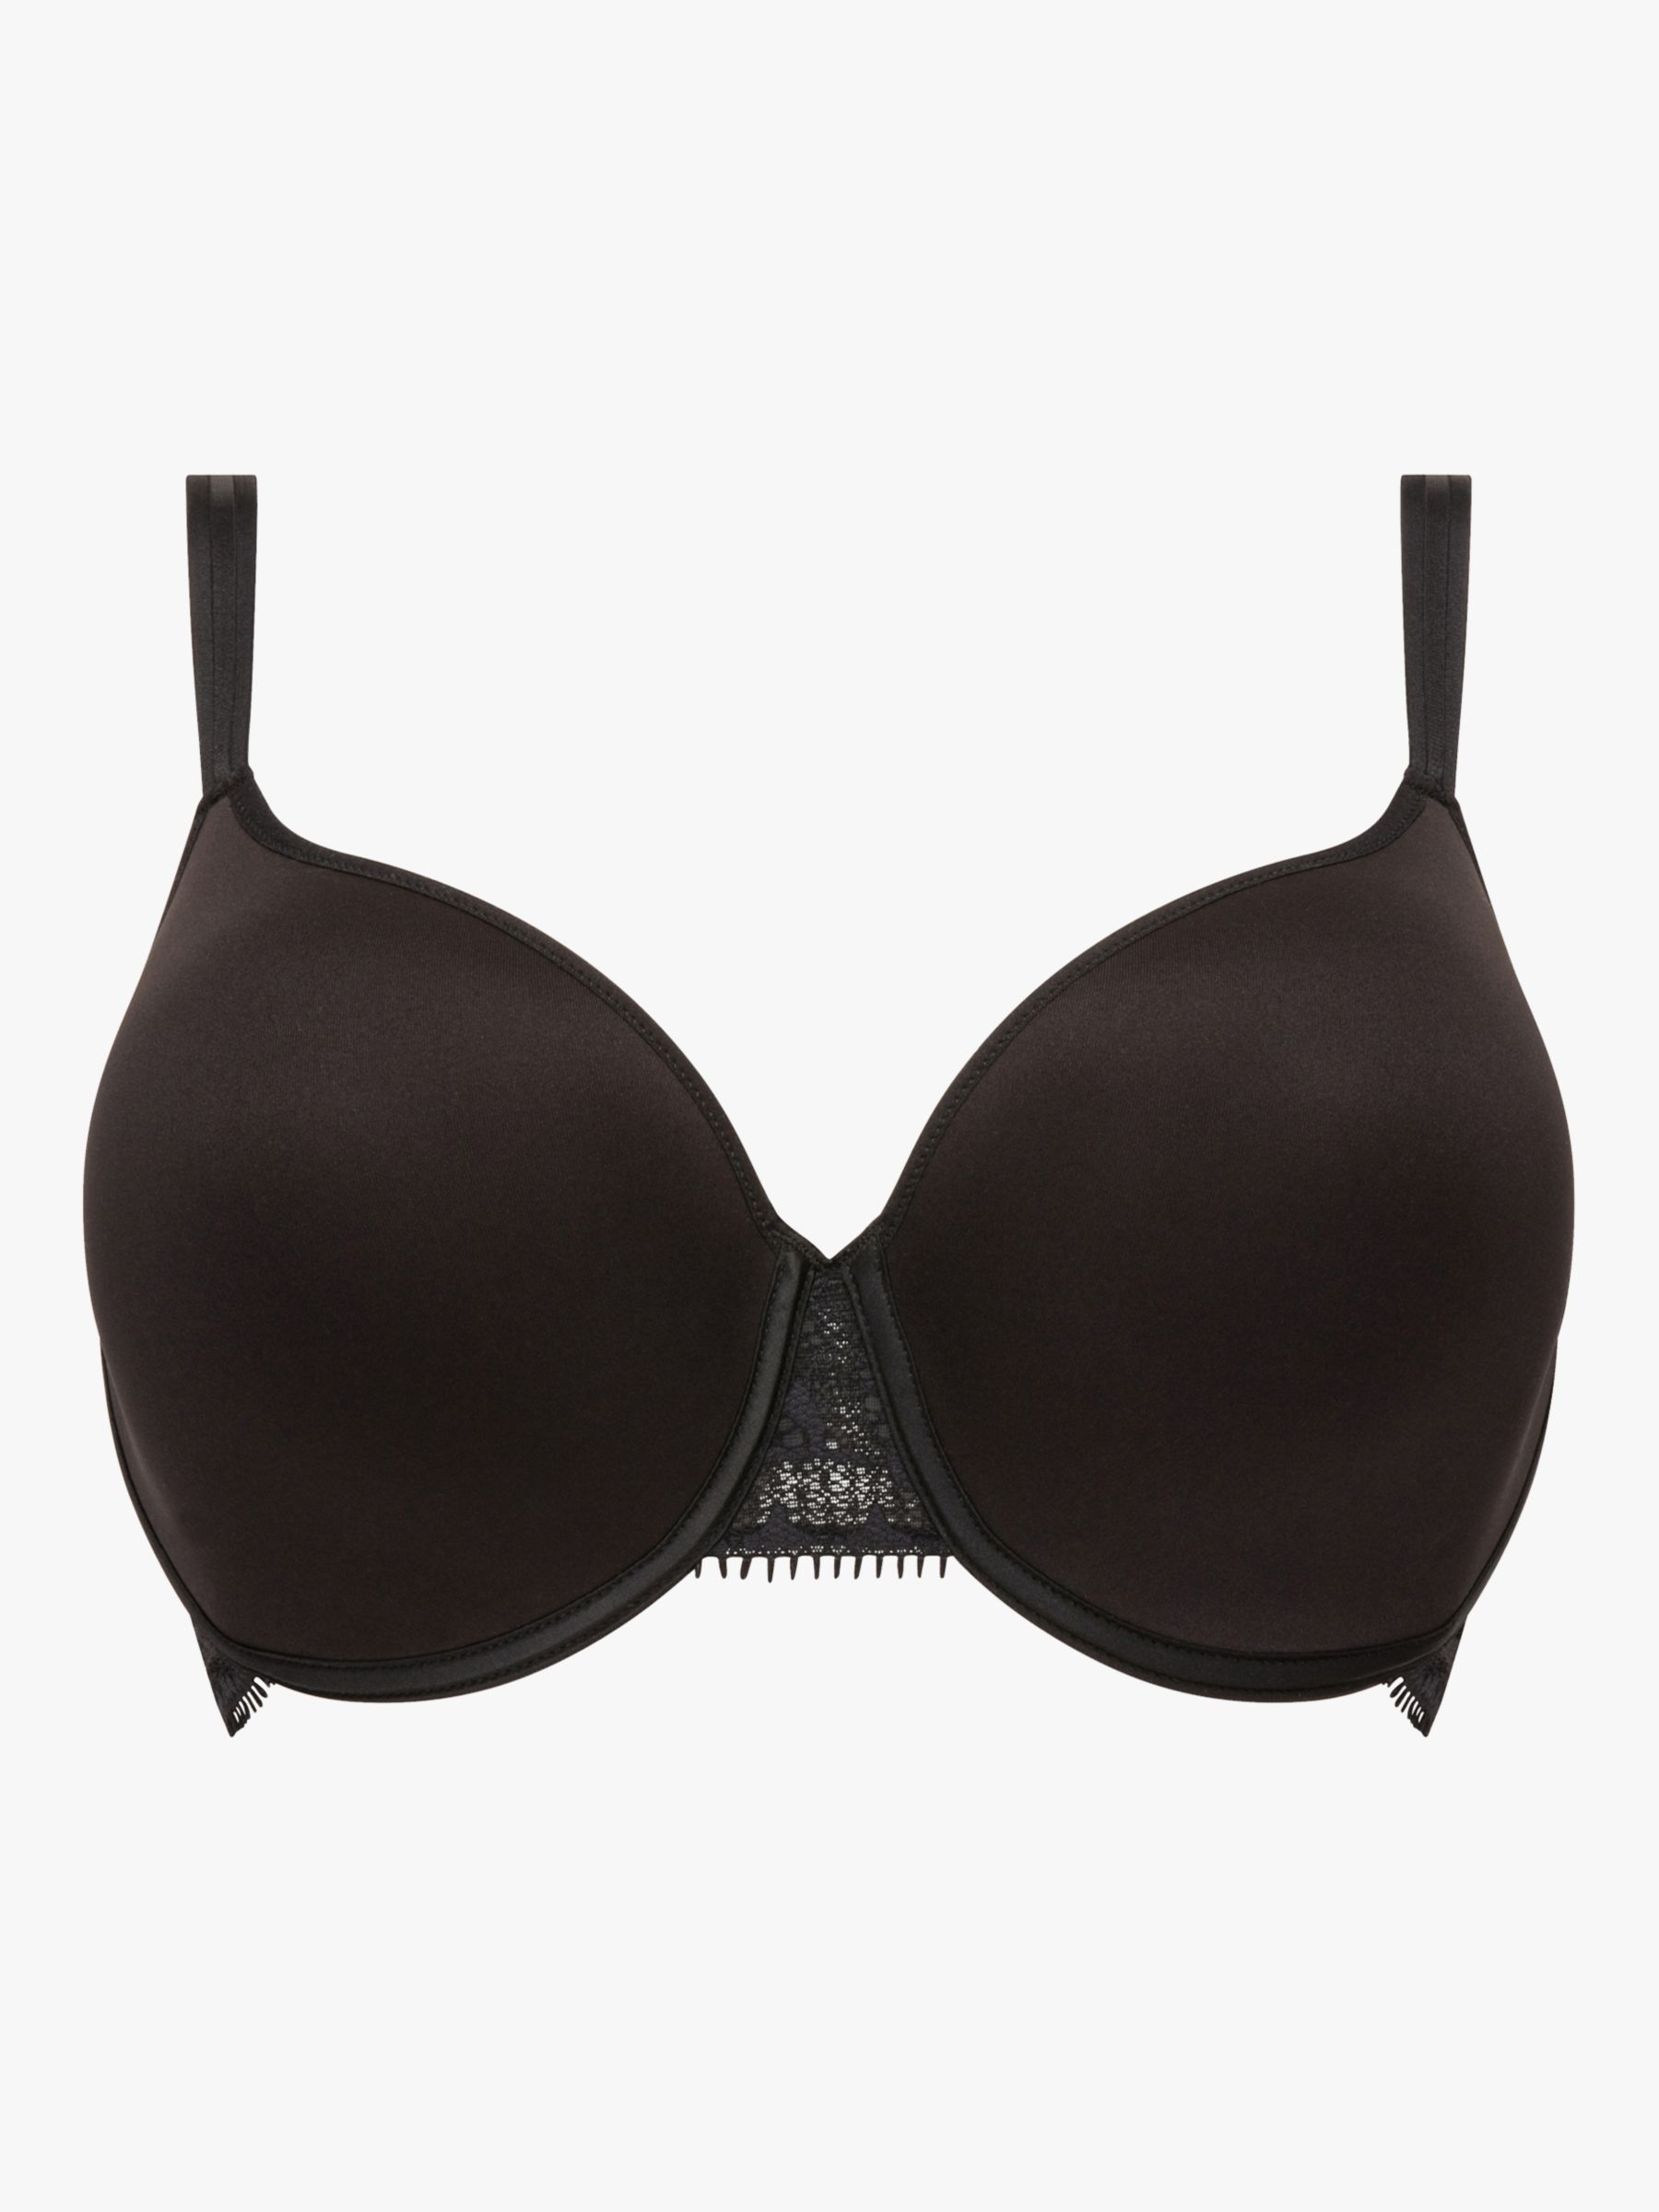 NEW Glamorise 38H Soft Shoulders Full-Figure T-Shirt Bra 1080 Black #81698